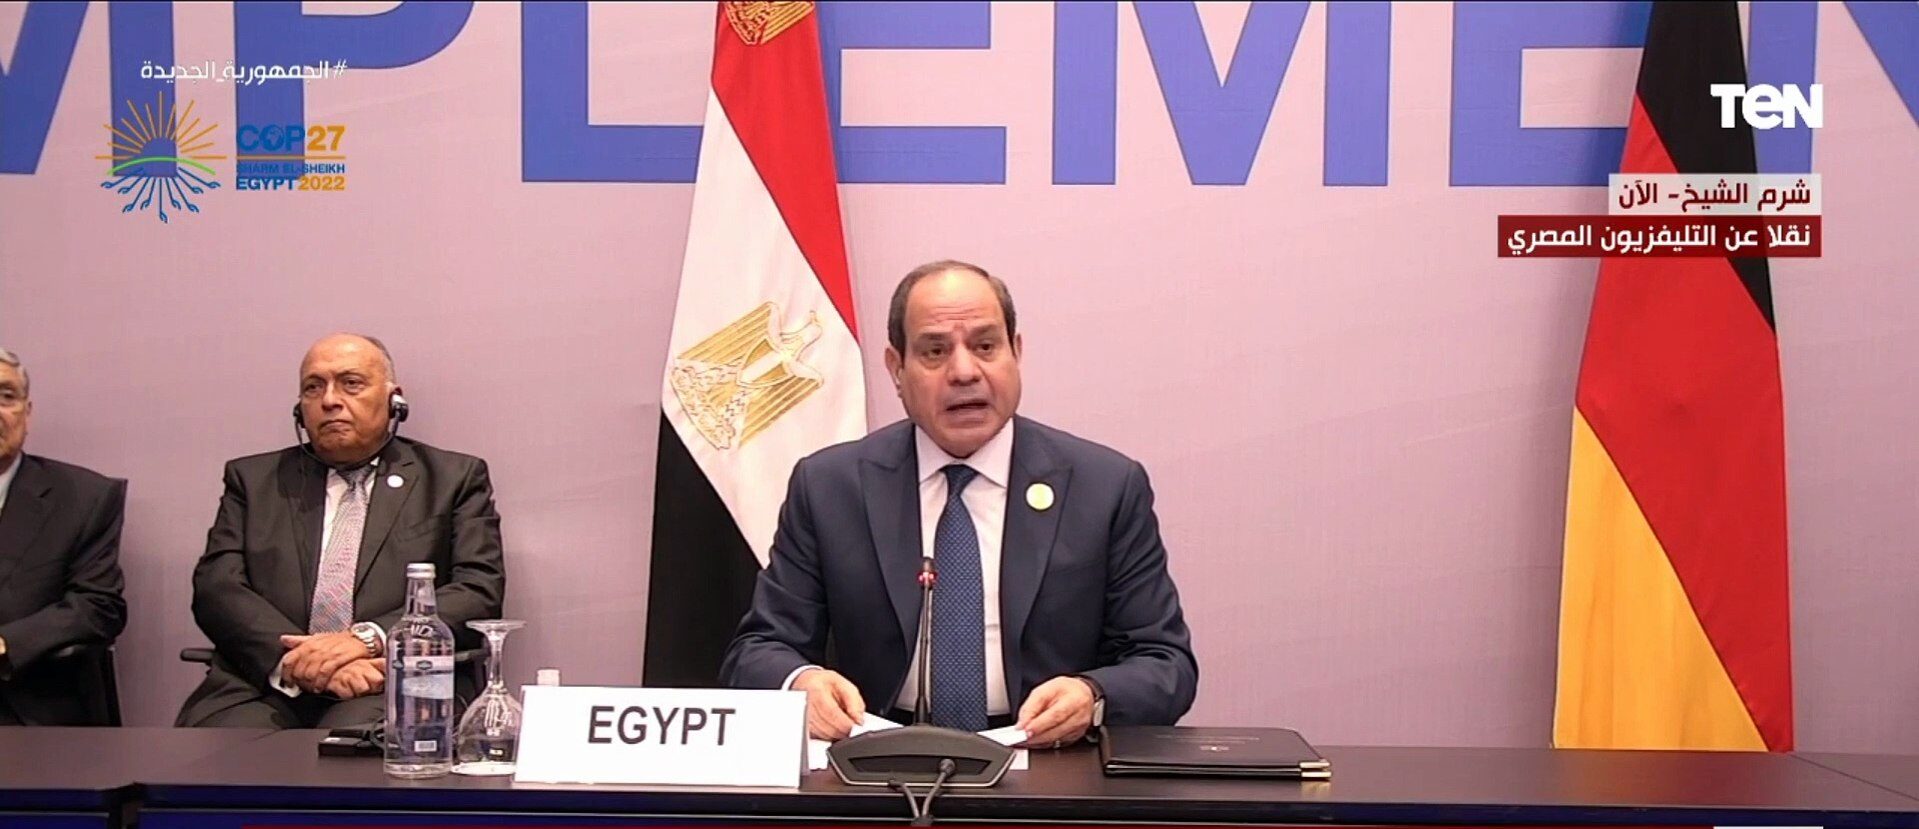 الرئيس السيسي: مصر ستكون مصدرًا لنقل الكهرباء النظيفة داخل المنطقة